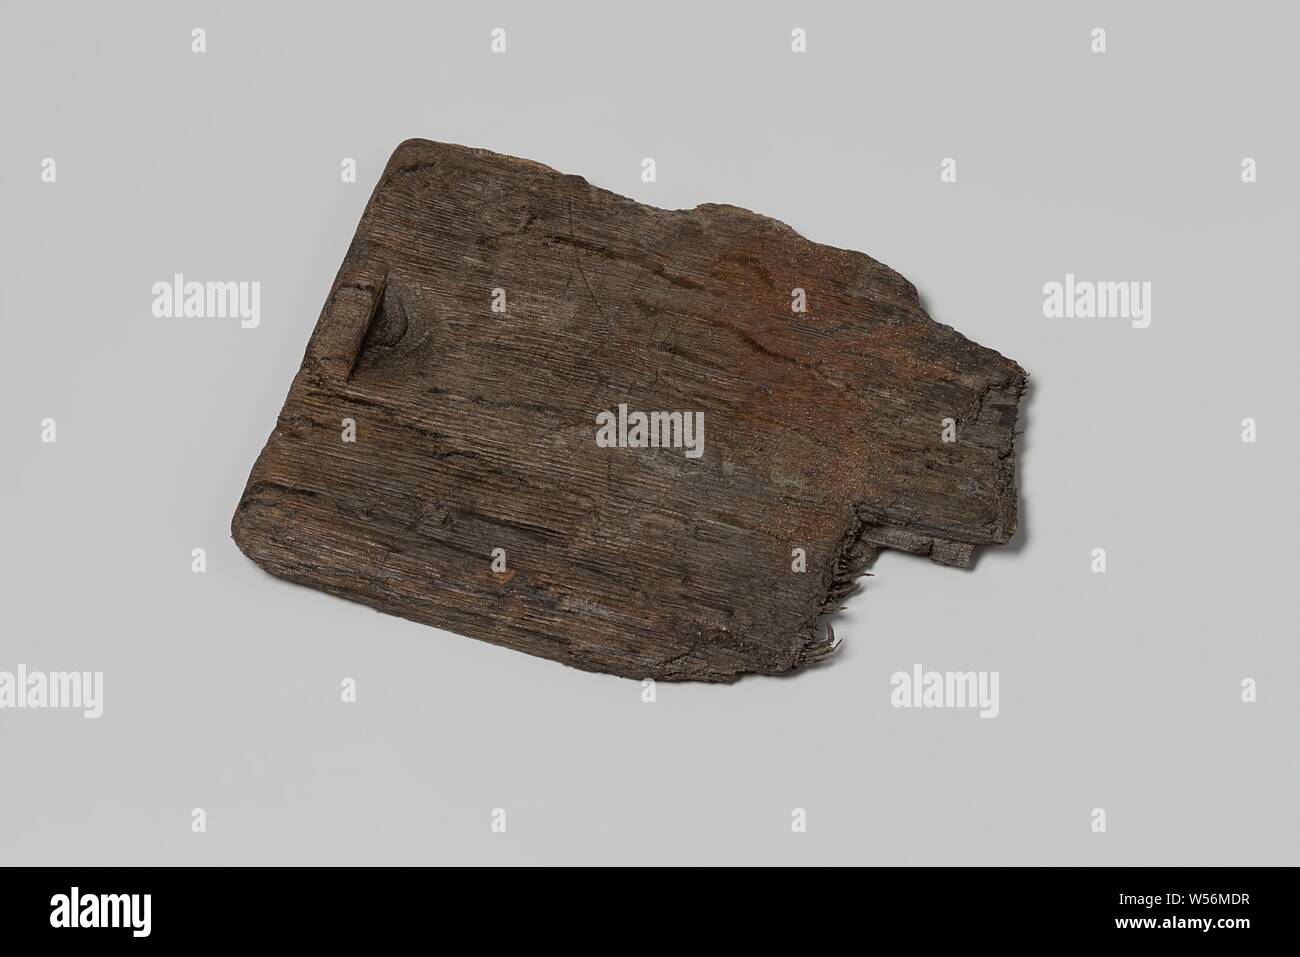 Il frammento del legno di un coperchio scorrevole dal relitto della Indie Orientali sailor 't Vliegend Hart, morto nel 1735. Il coperchio scorrevole è realizzato in legno di quercia. Si tratta di un pezzo piatto di legno con un incavo su un lato corto con il quale si poteva far scorrere il coperchio, quindi aprirlo. Il colore è marrone scuro / nero (vedere dimensioni), Olandese East India Company, 't Vliegend Hart (nave), 1700 - 1735, il legno (materiale vegetale), Rovere (legno), h 16.2 cm × W 12,8 cm × d 1 cm Foto Stock